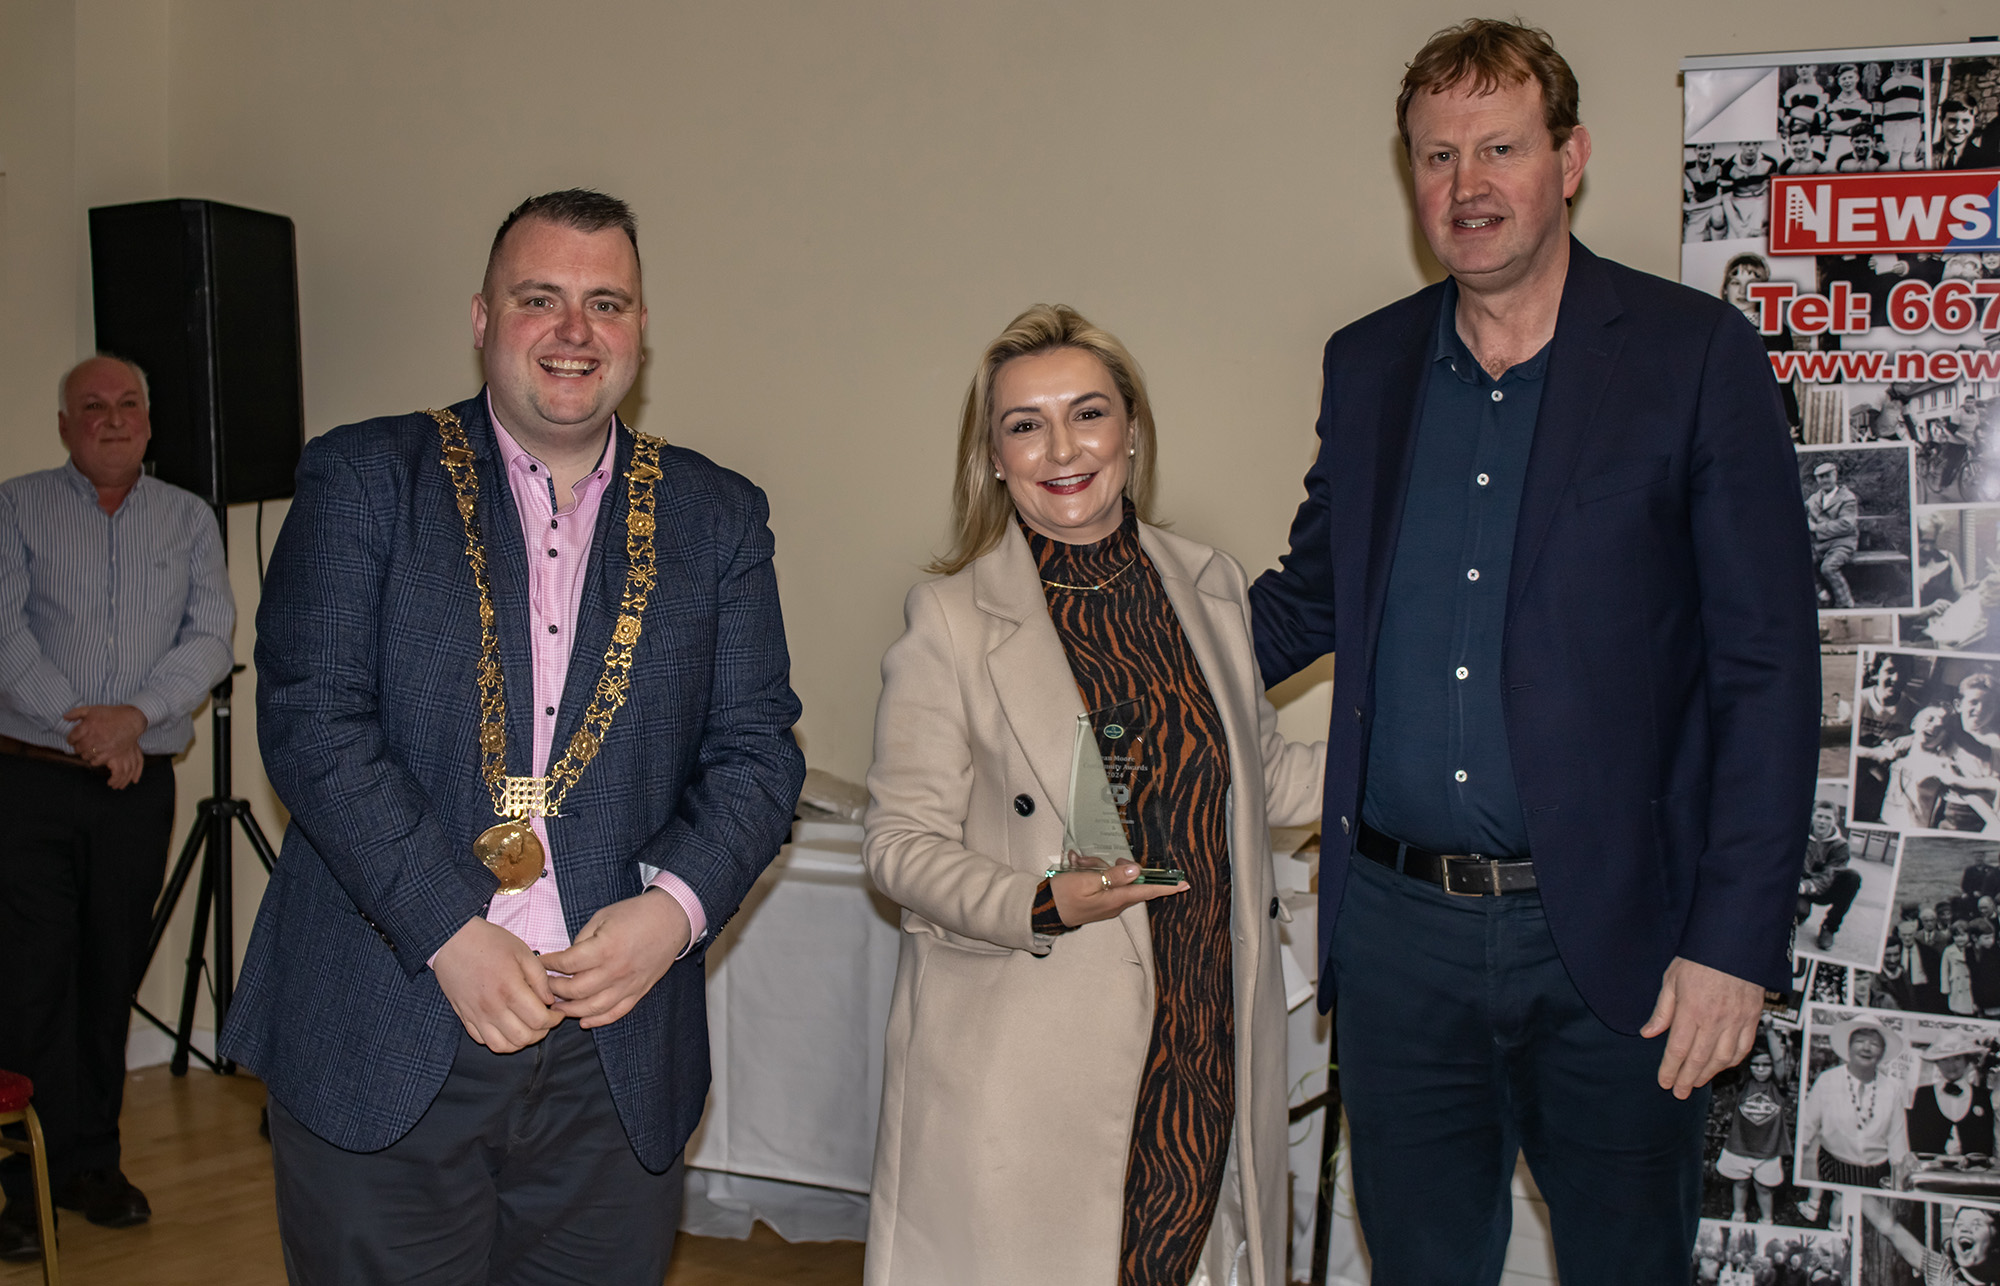 Teresa Weafer (Google) with the Lord Mayor Daithí de Róiste and Jim O'Callaghan TD